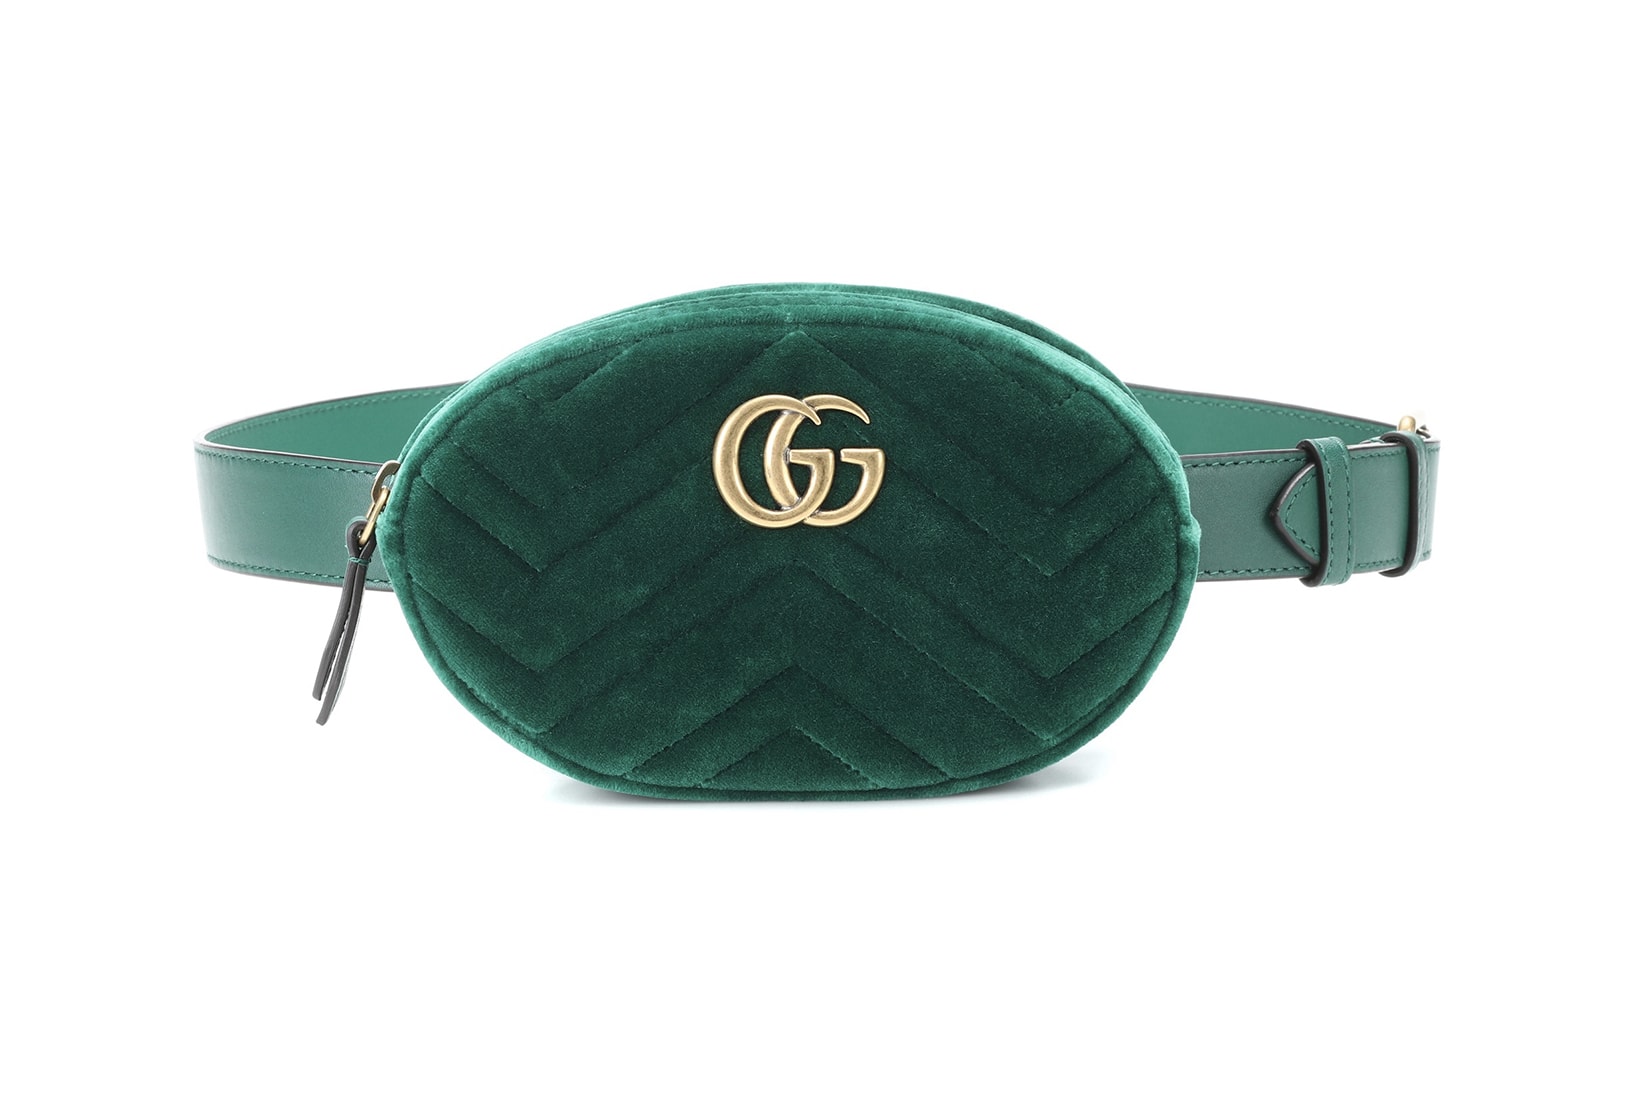 Gucci Marmont belt bag fanny pack gold logo green velvet where to buy